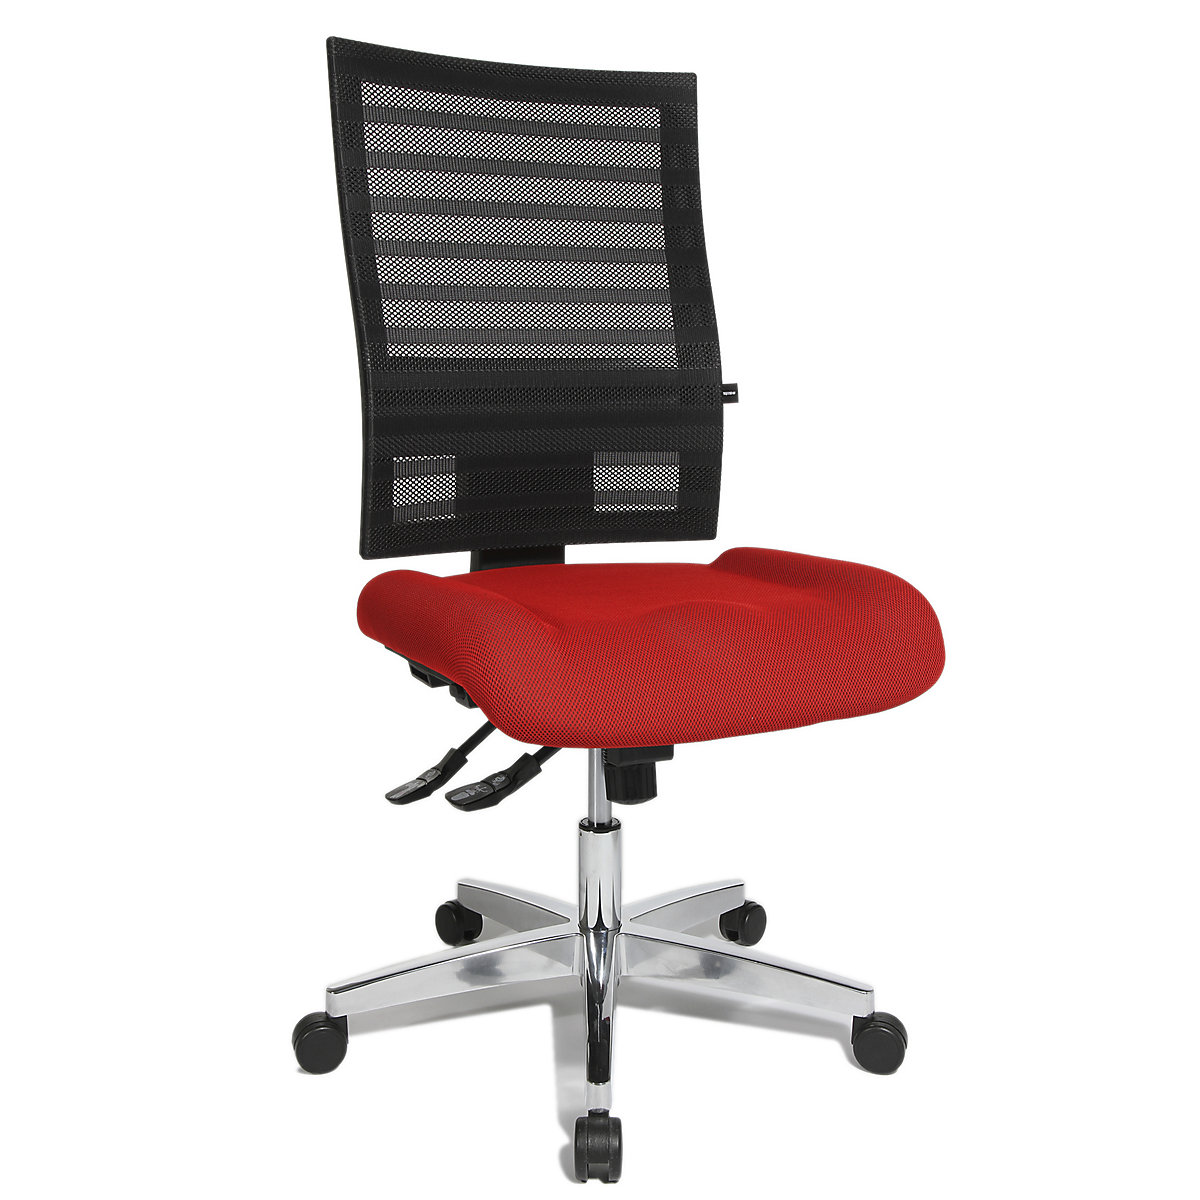 Udobna okretna stolica – Topstar, mrežasti naslon za leđa, u crnoj boji, presvlaka u crvenoj boji-4